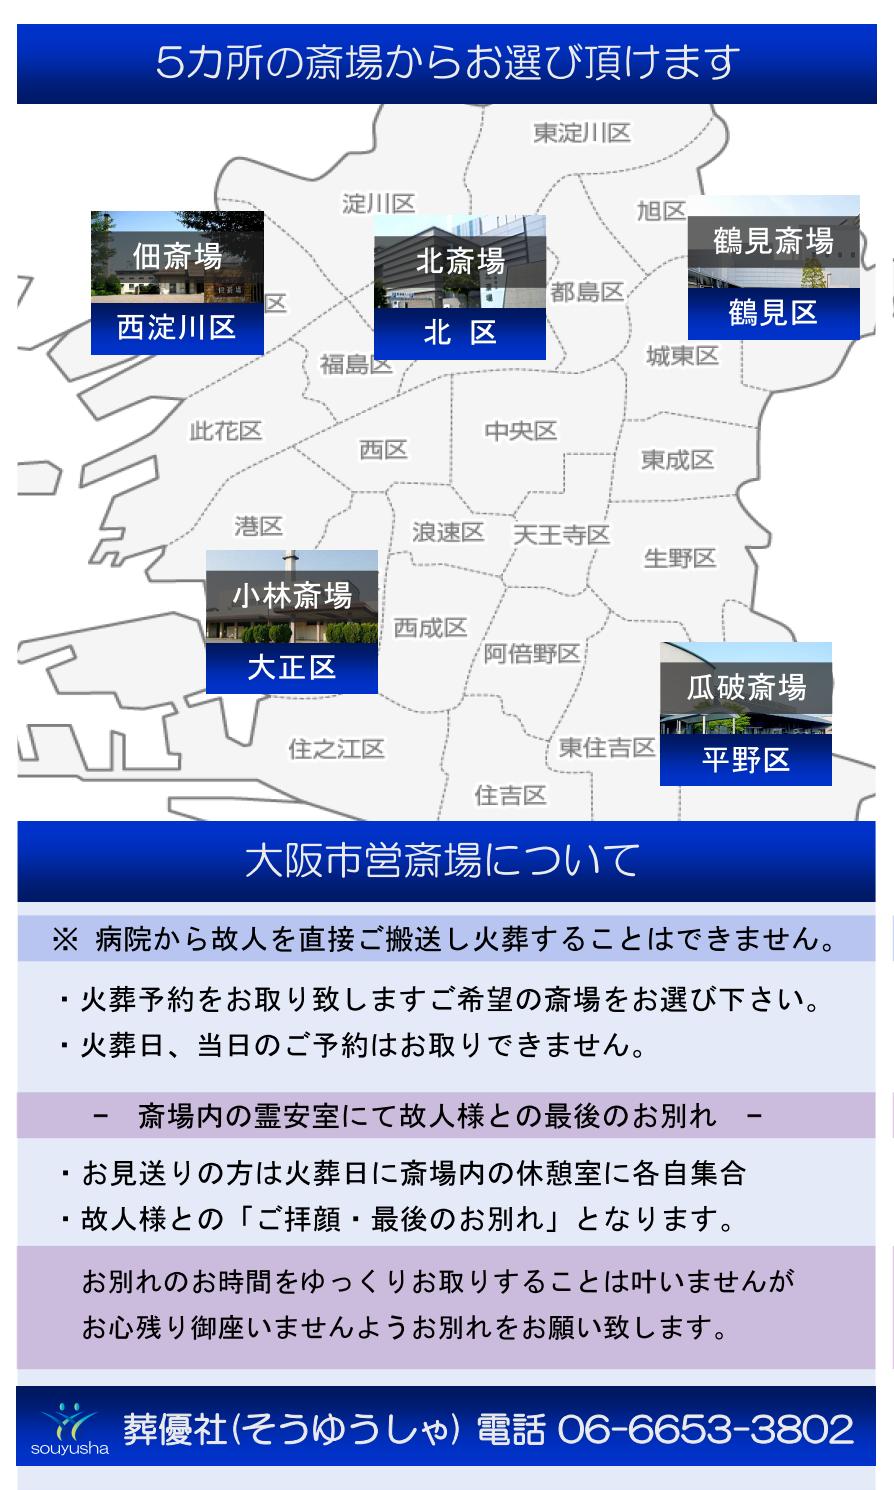 大阪市民が利用できる斎場・火葬場の紹介です。